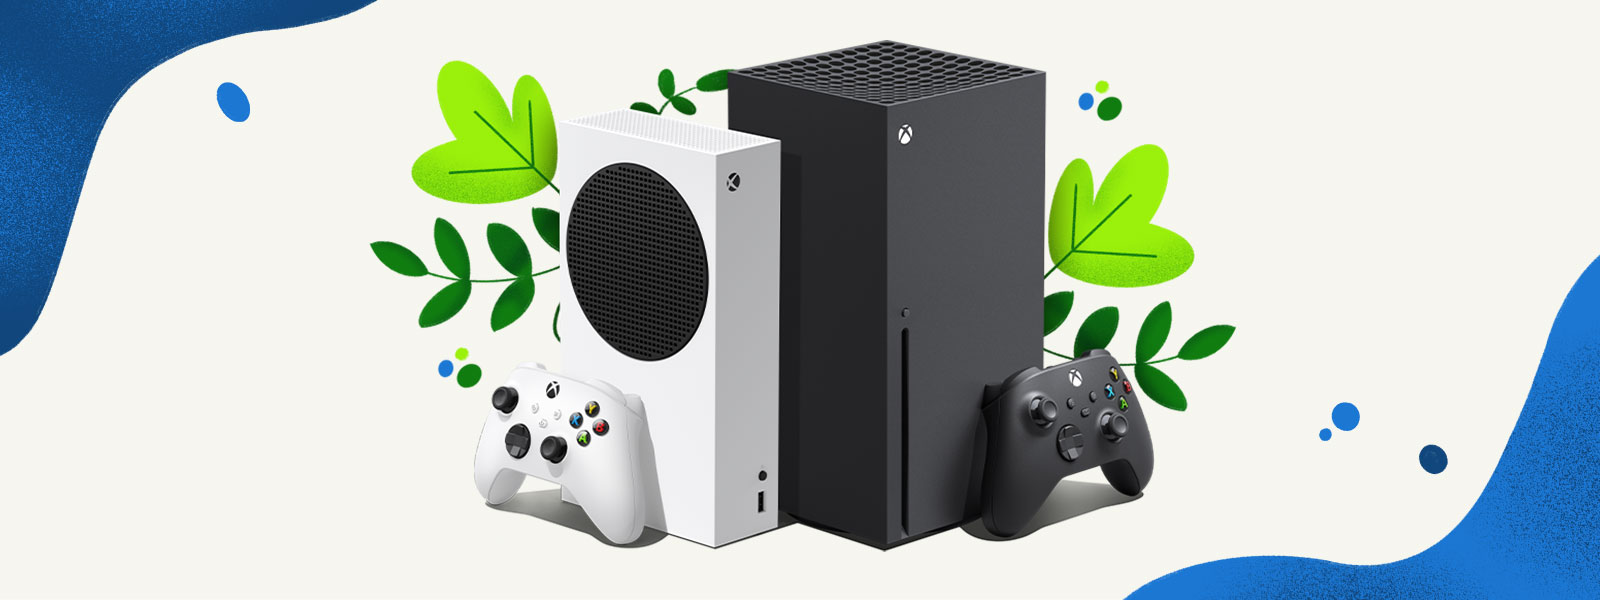 Xbox Series X 및 Xbox Series S 콘솔은 식물과 푸른 물보라 장식 배경 앞에 나란히 놓여 있습니다.